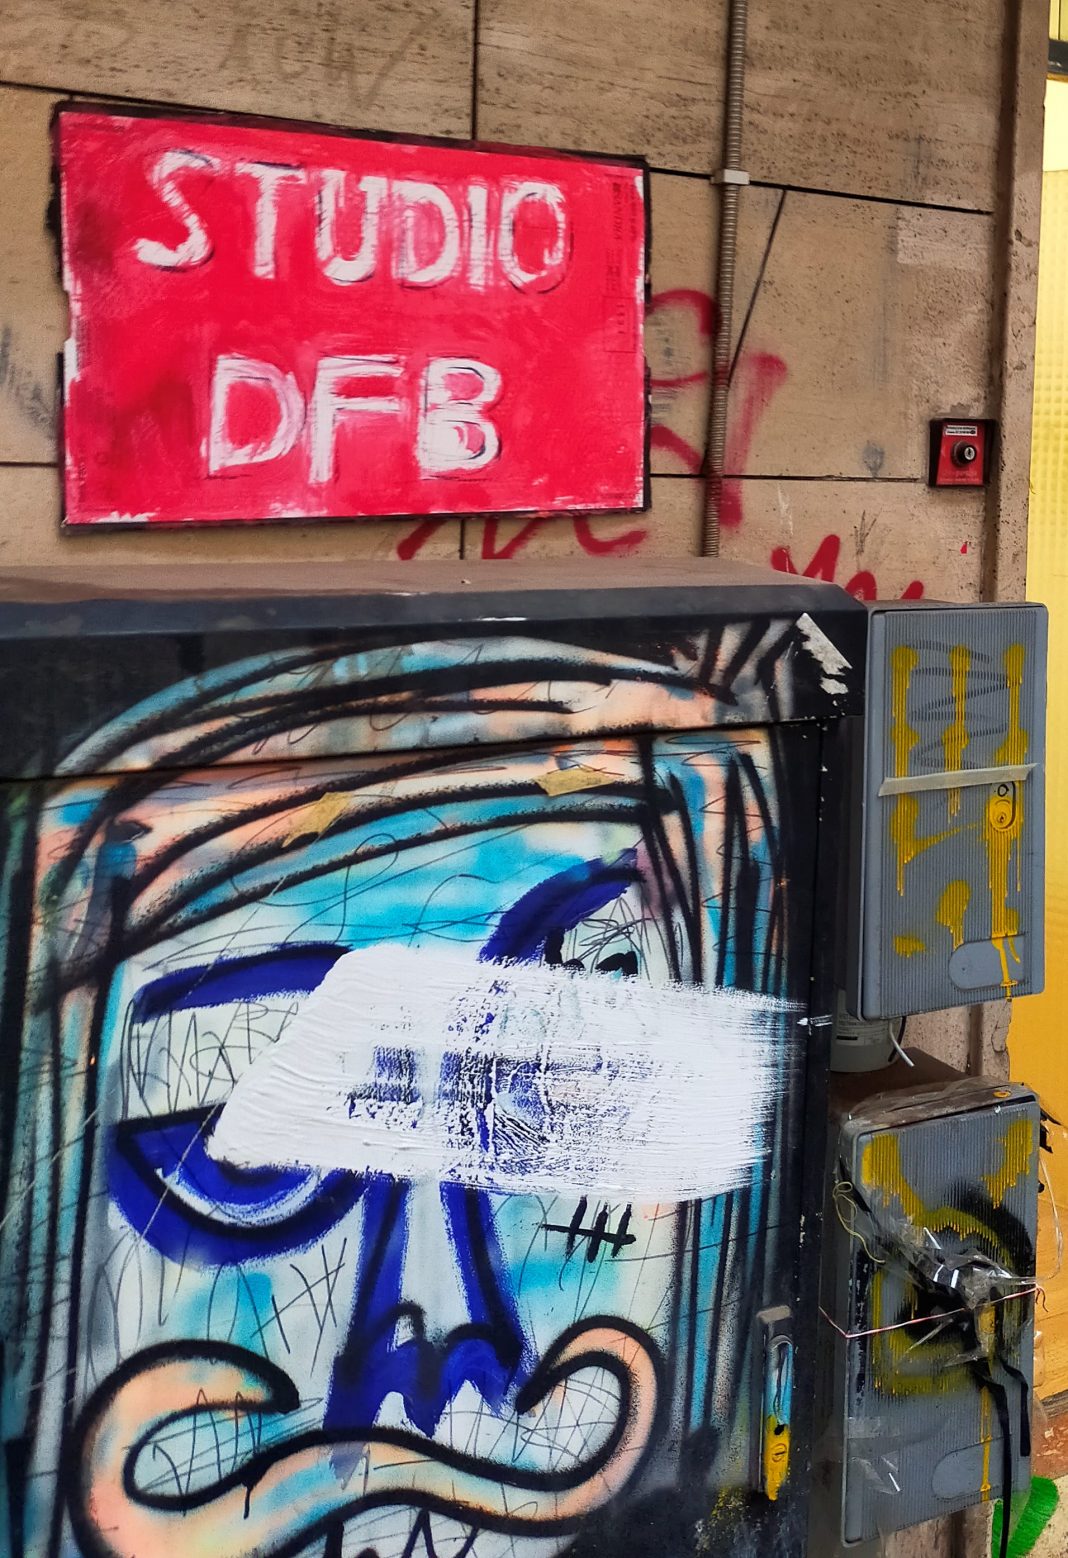 Studio DFB Alberto Di Fabio